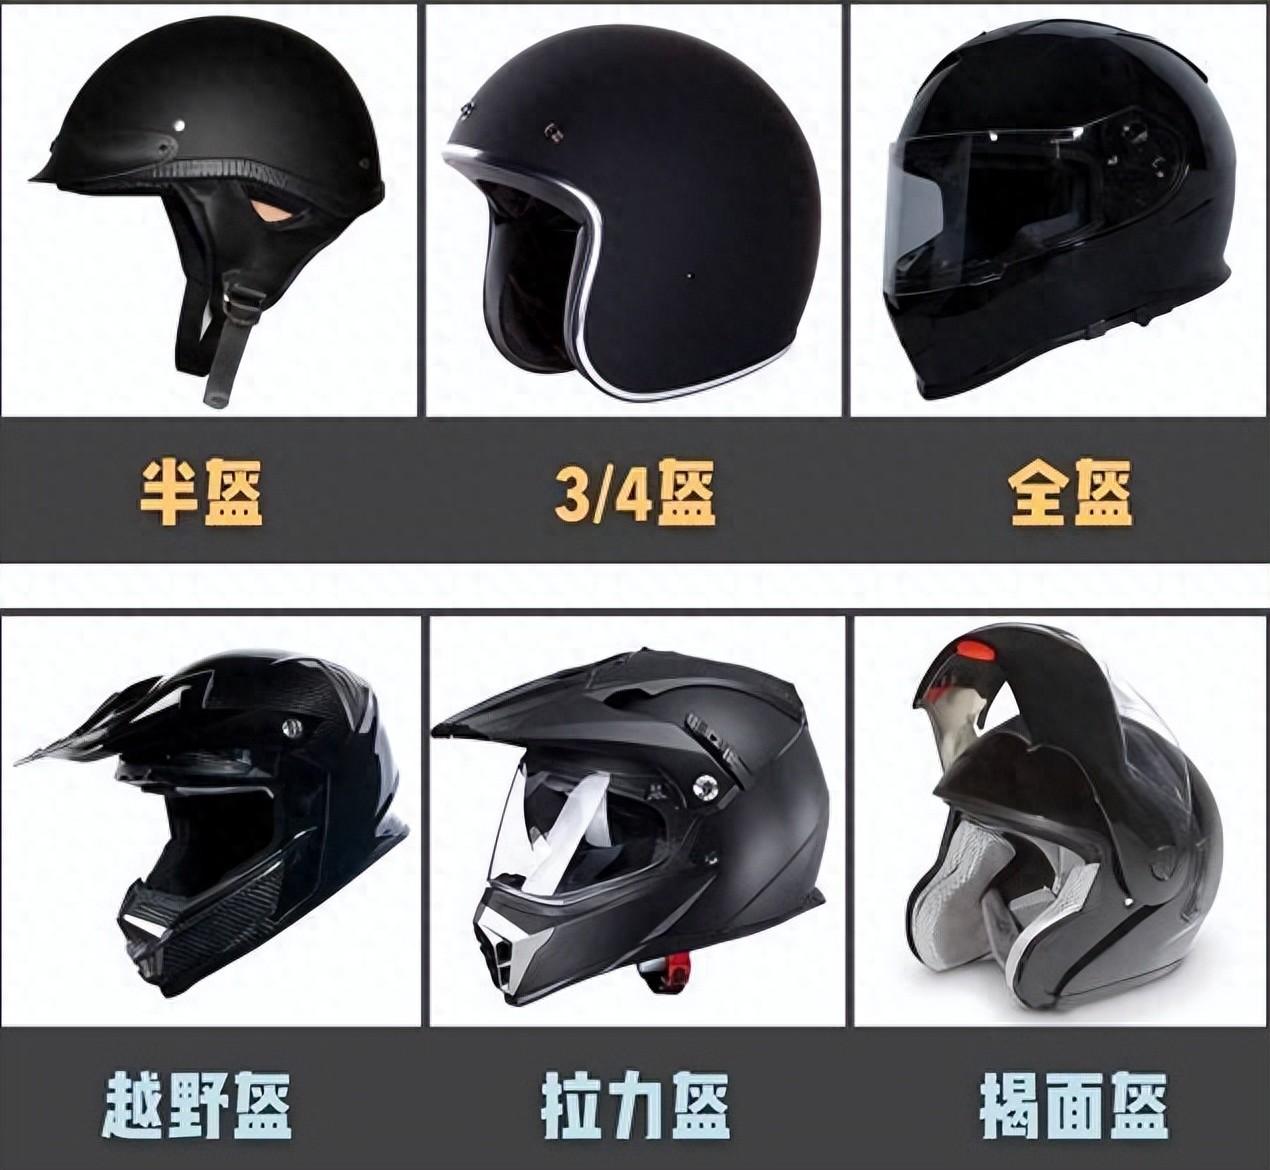 国产头盔品牌前十名安全认证